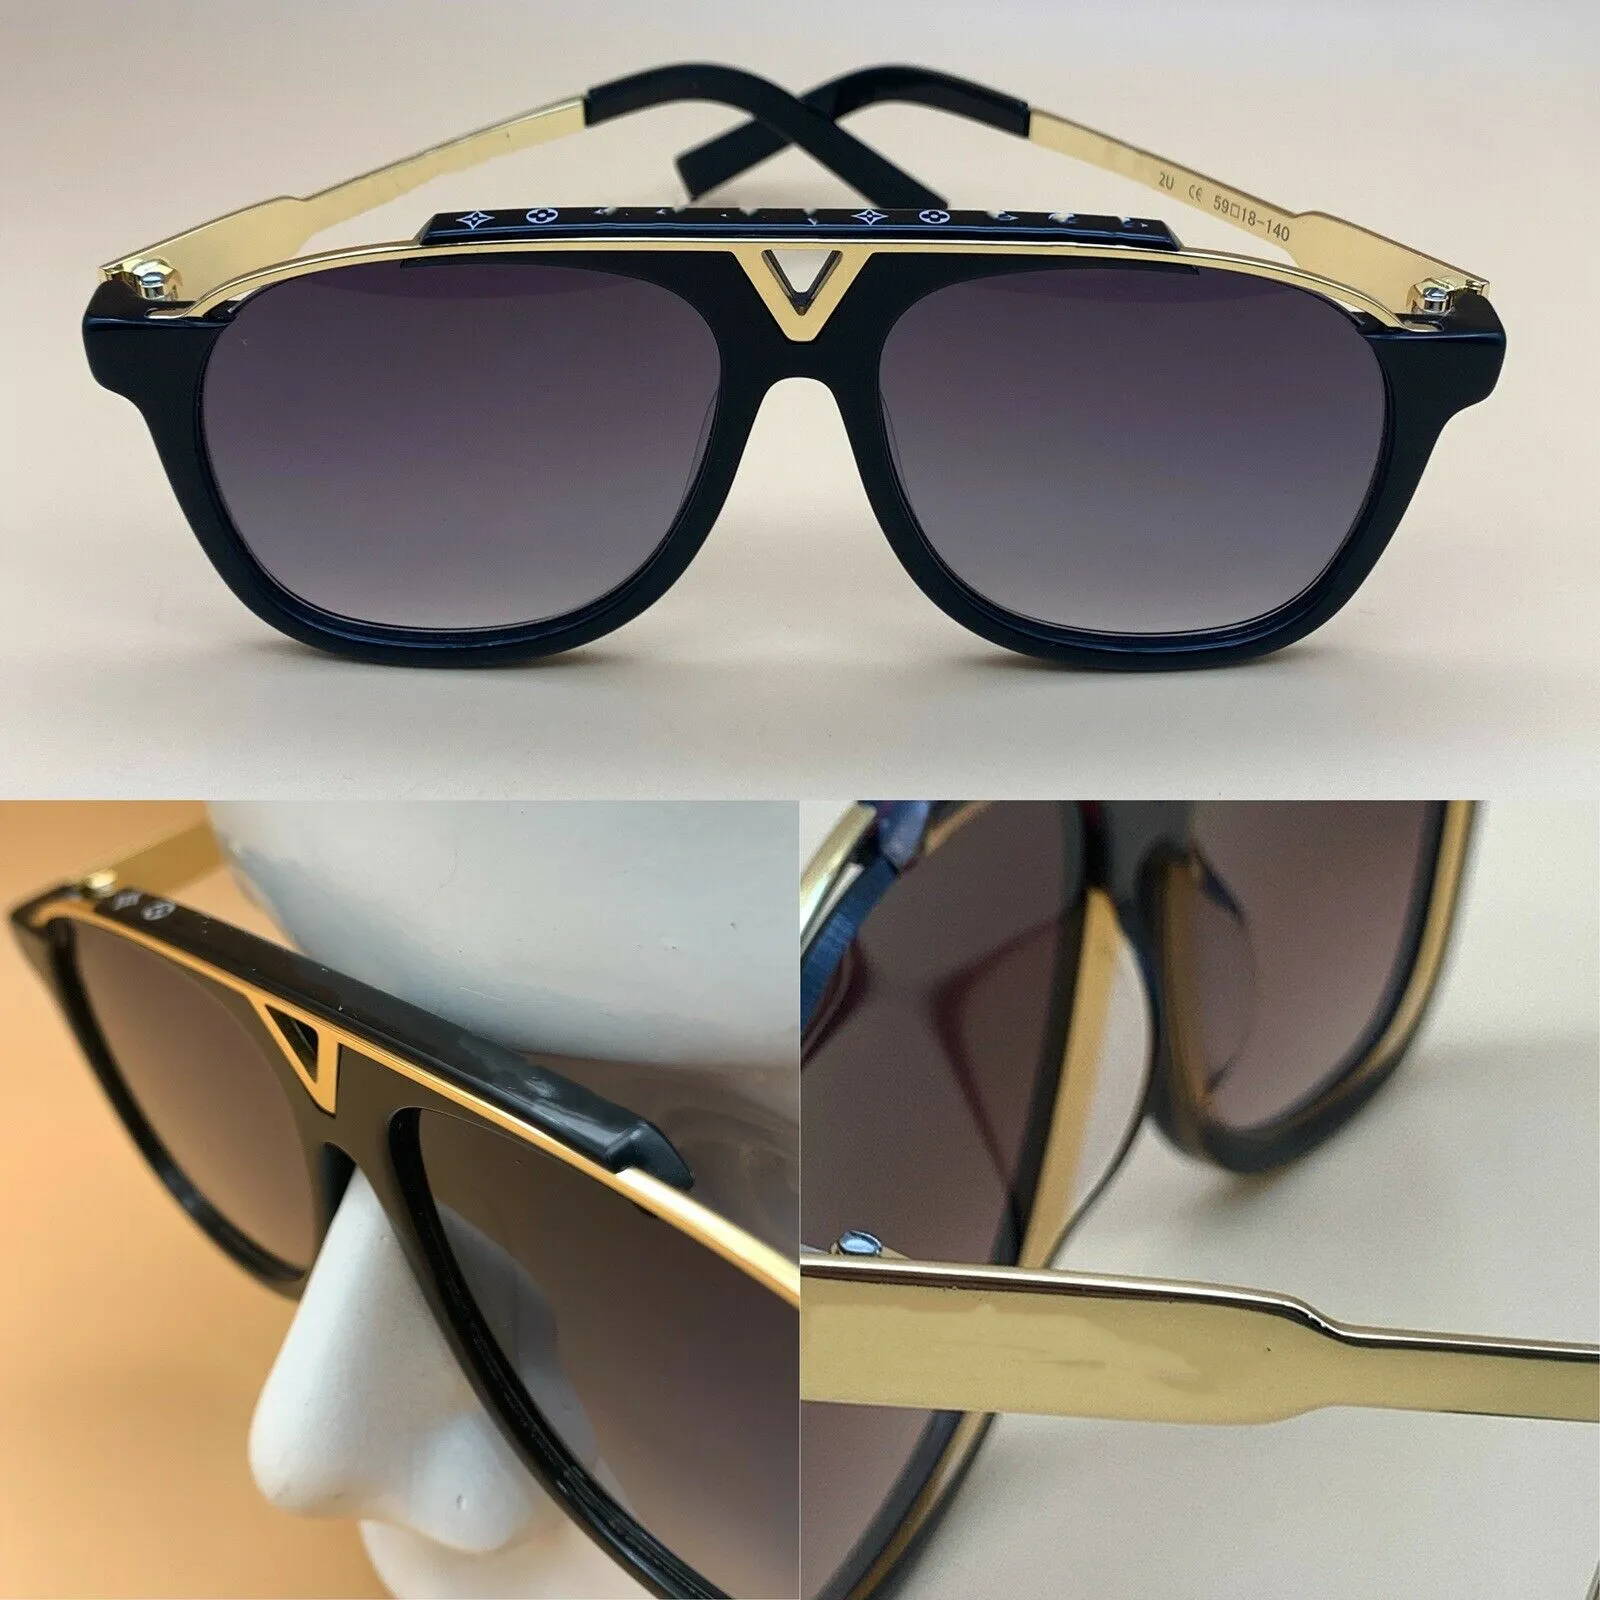 De nieuwste verkopende populaire mode mannen vrouwen designer zonnebril 0937 vierkante plaat metalen combinatie frame topkwaliteit anti-UV4002969